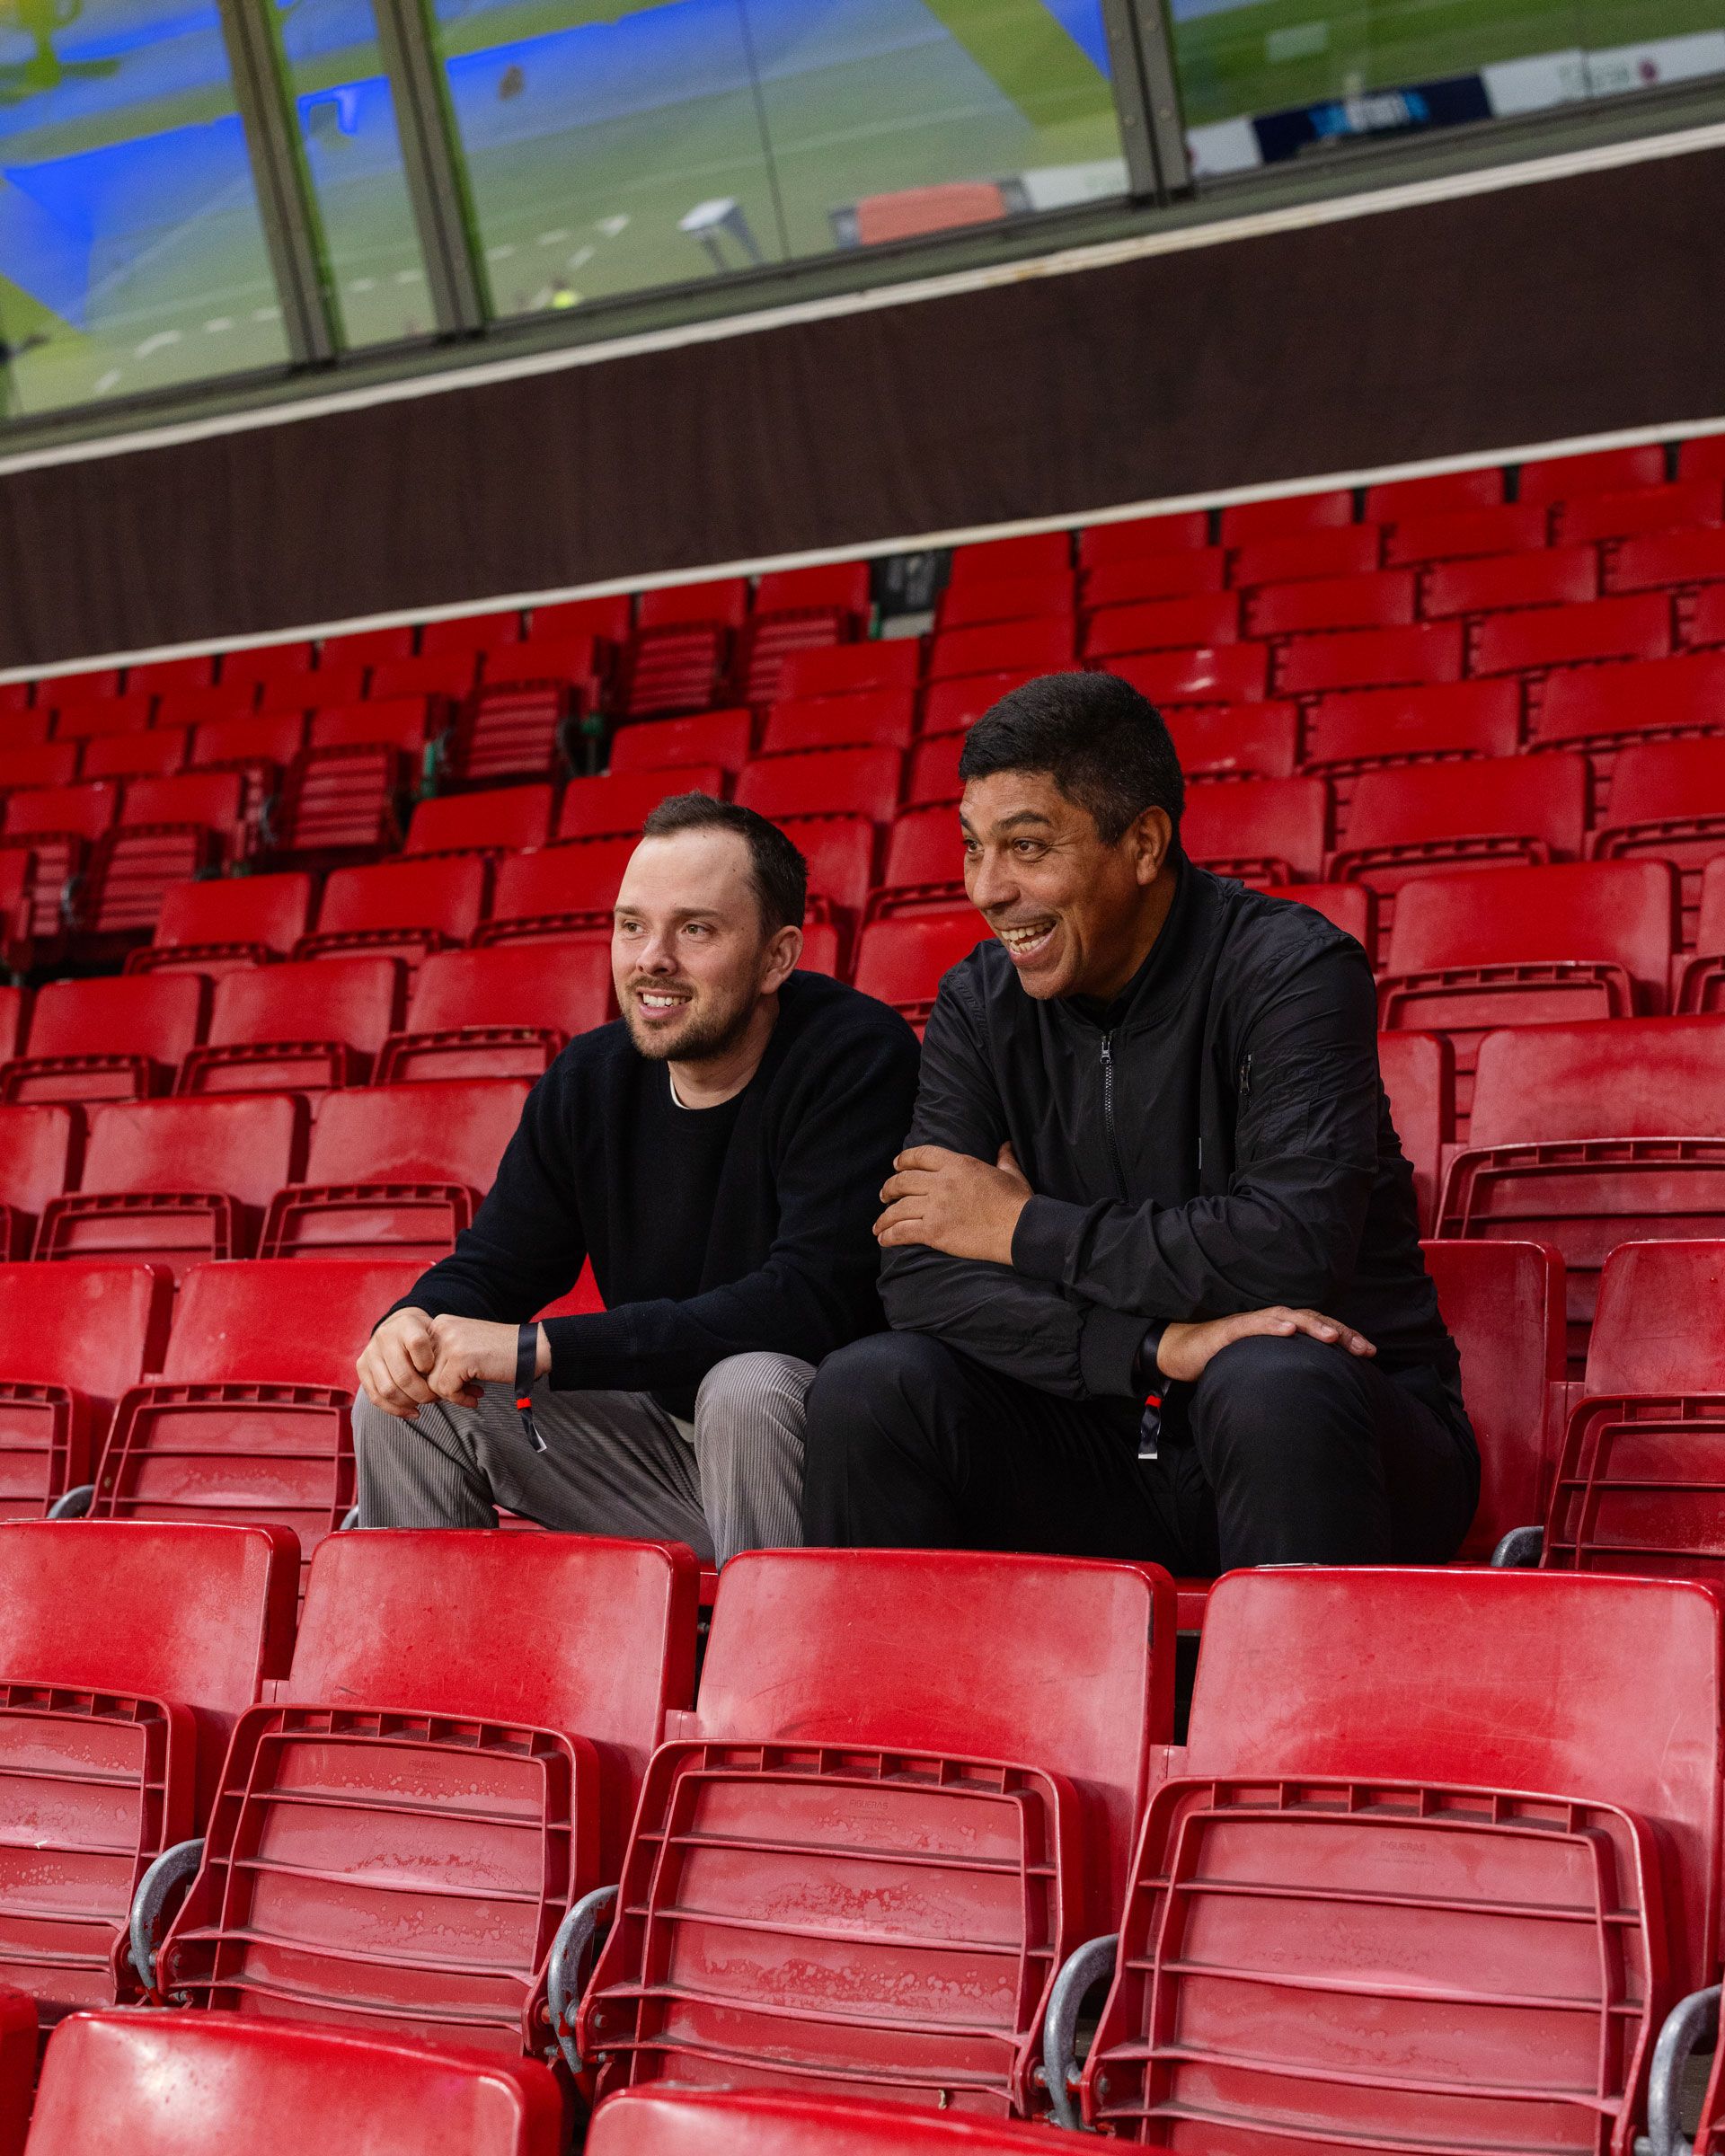 Zwei Männer sitzen im Stadion und lachen